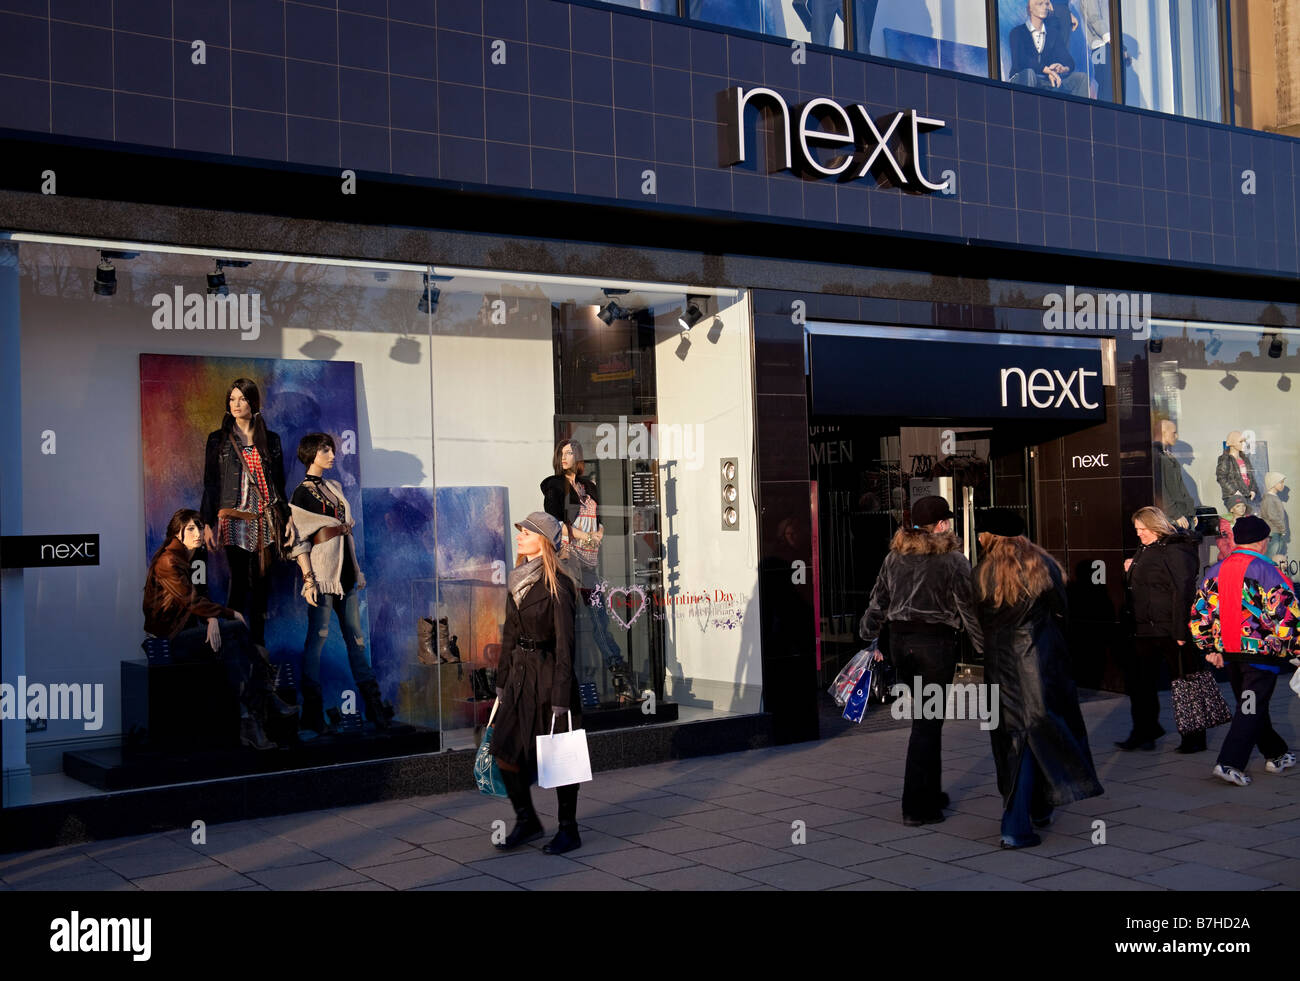 Prossimo negozio, Edimburgo, Scozia, Regno Unito, Europa Foto Stock